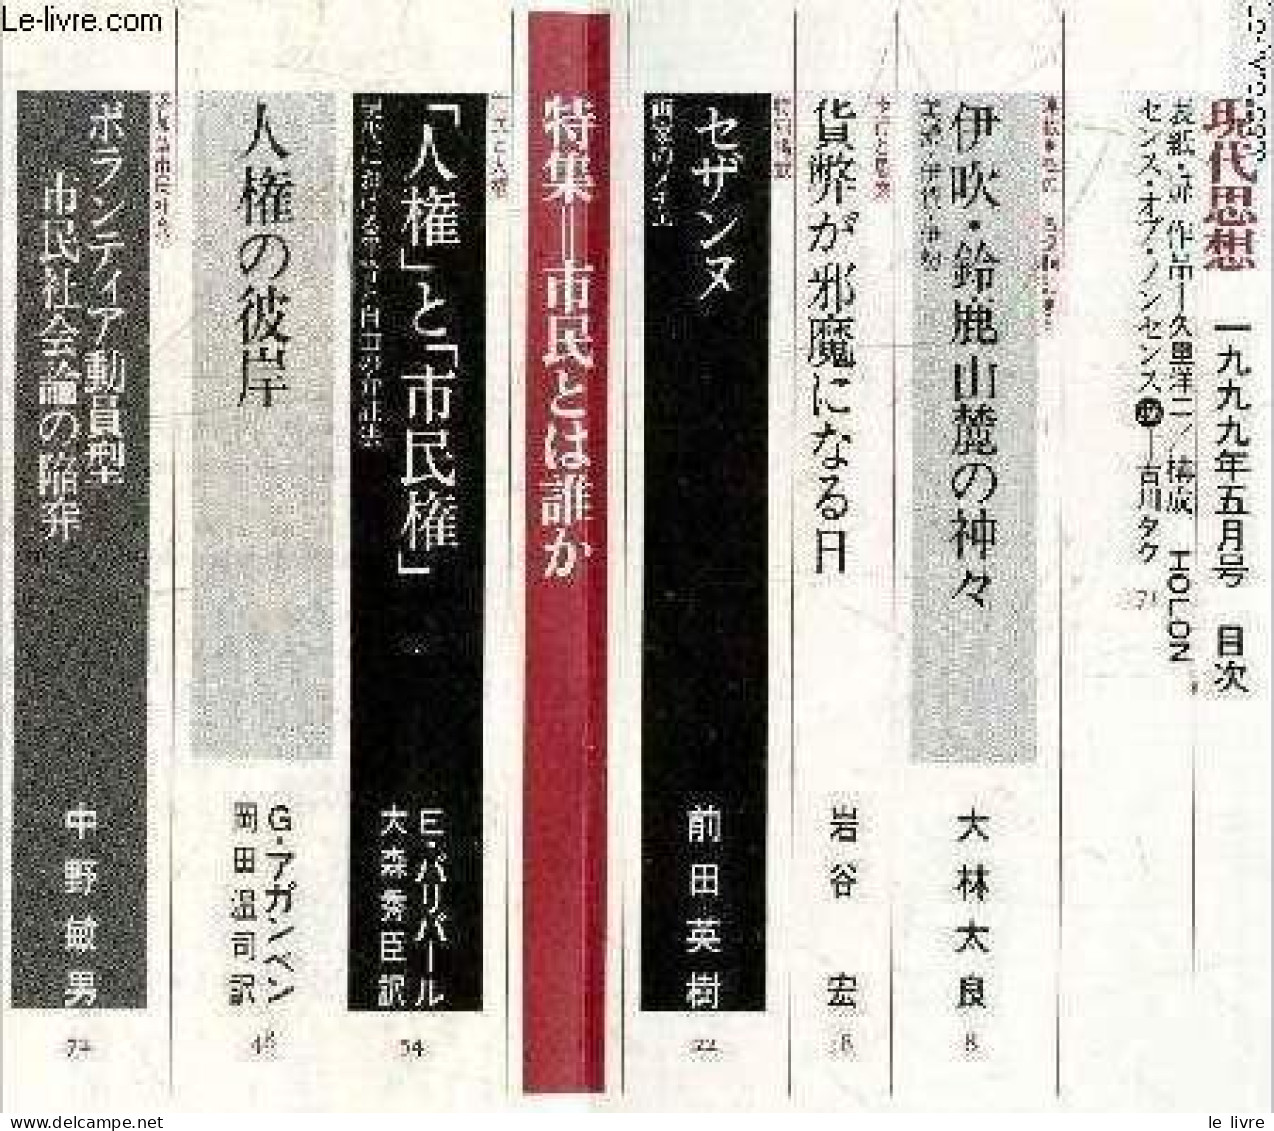 Revue De La Pensee D'aujoiurd"hui - N°5 -1999 - VOL. 27-5 - Ouvrage En Japonais - Voir Photos - COLLECTIF - 1999 - Cultura